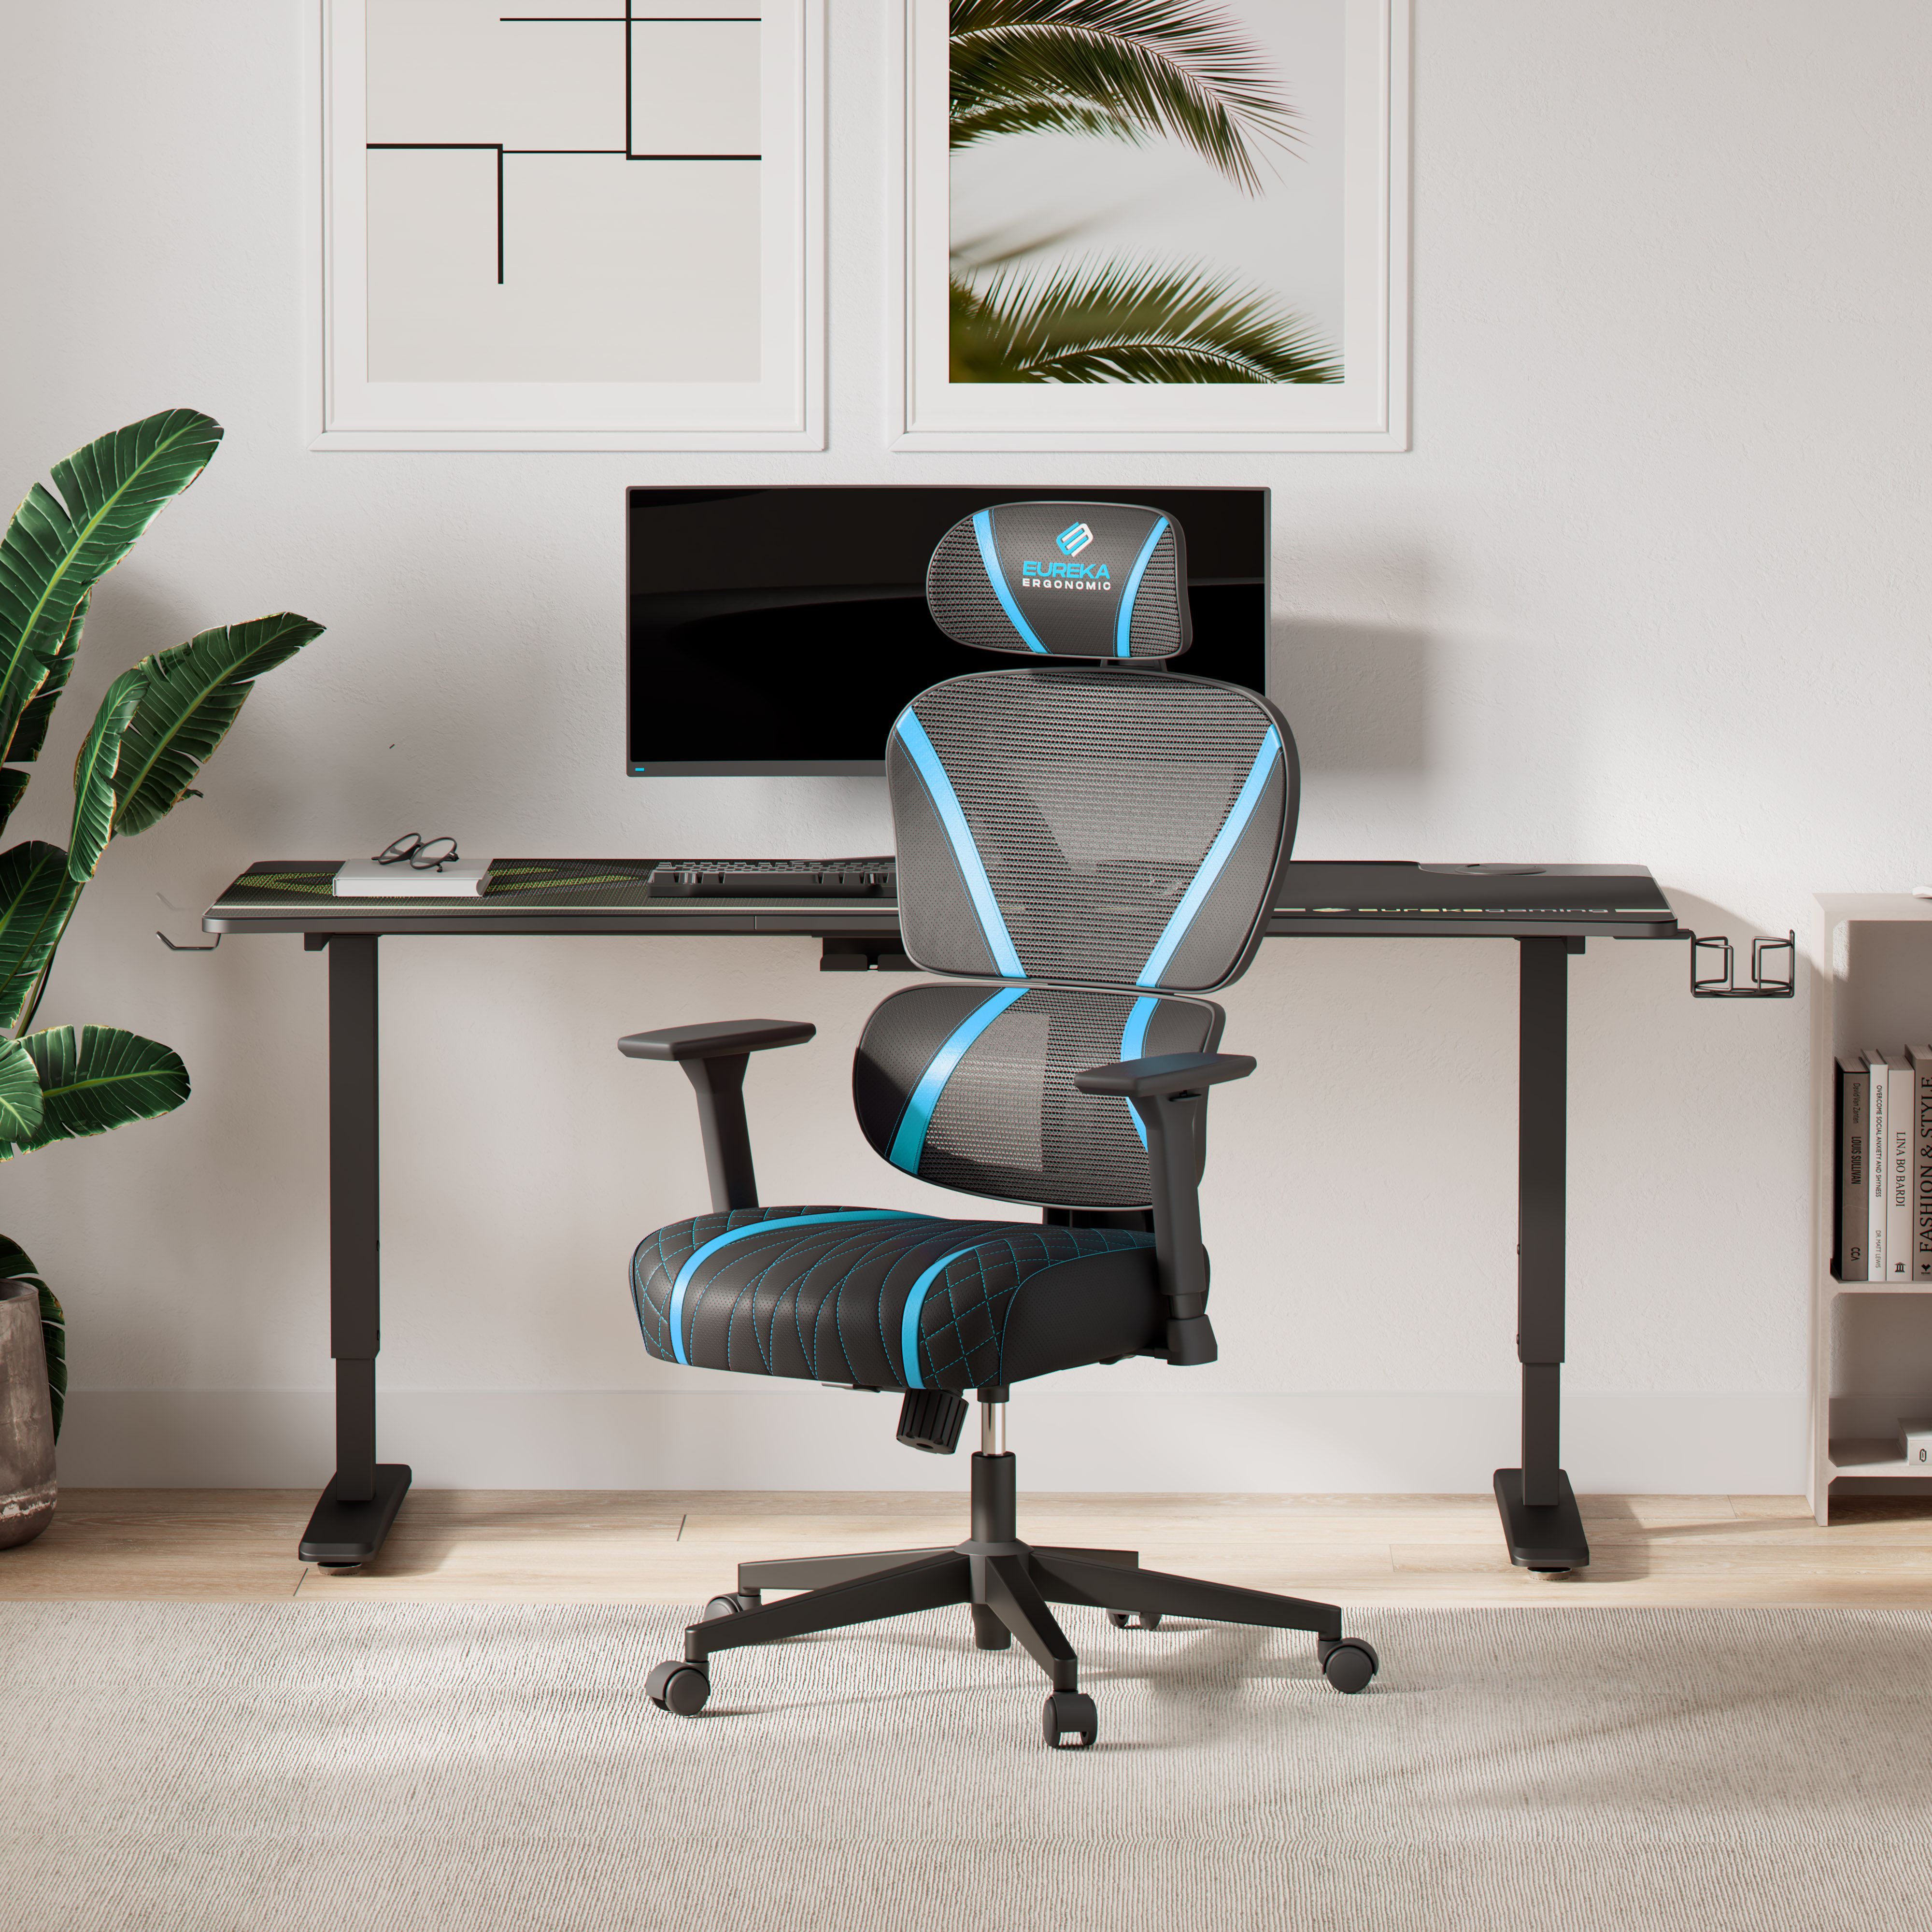 https://assets.wfcdn.com/im/06042388/compr-r85/2262/226279079/eureka-ergonomic-mesh-home-office-chairs-dual-back-3d-lumbar-support-reclining-chair.jpg